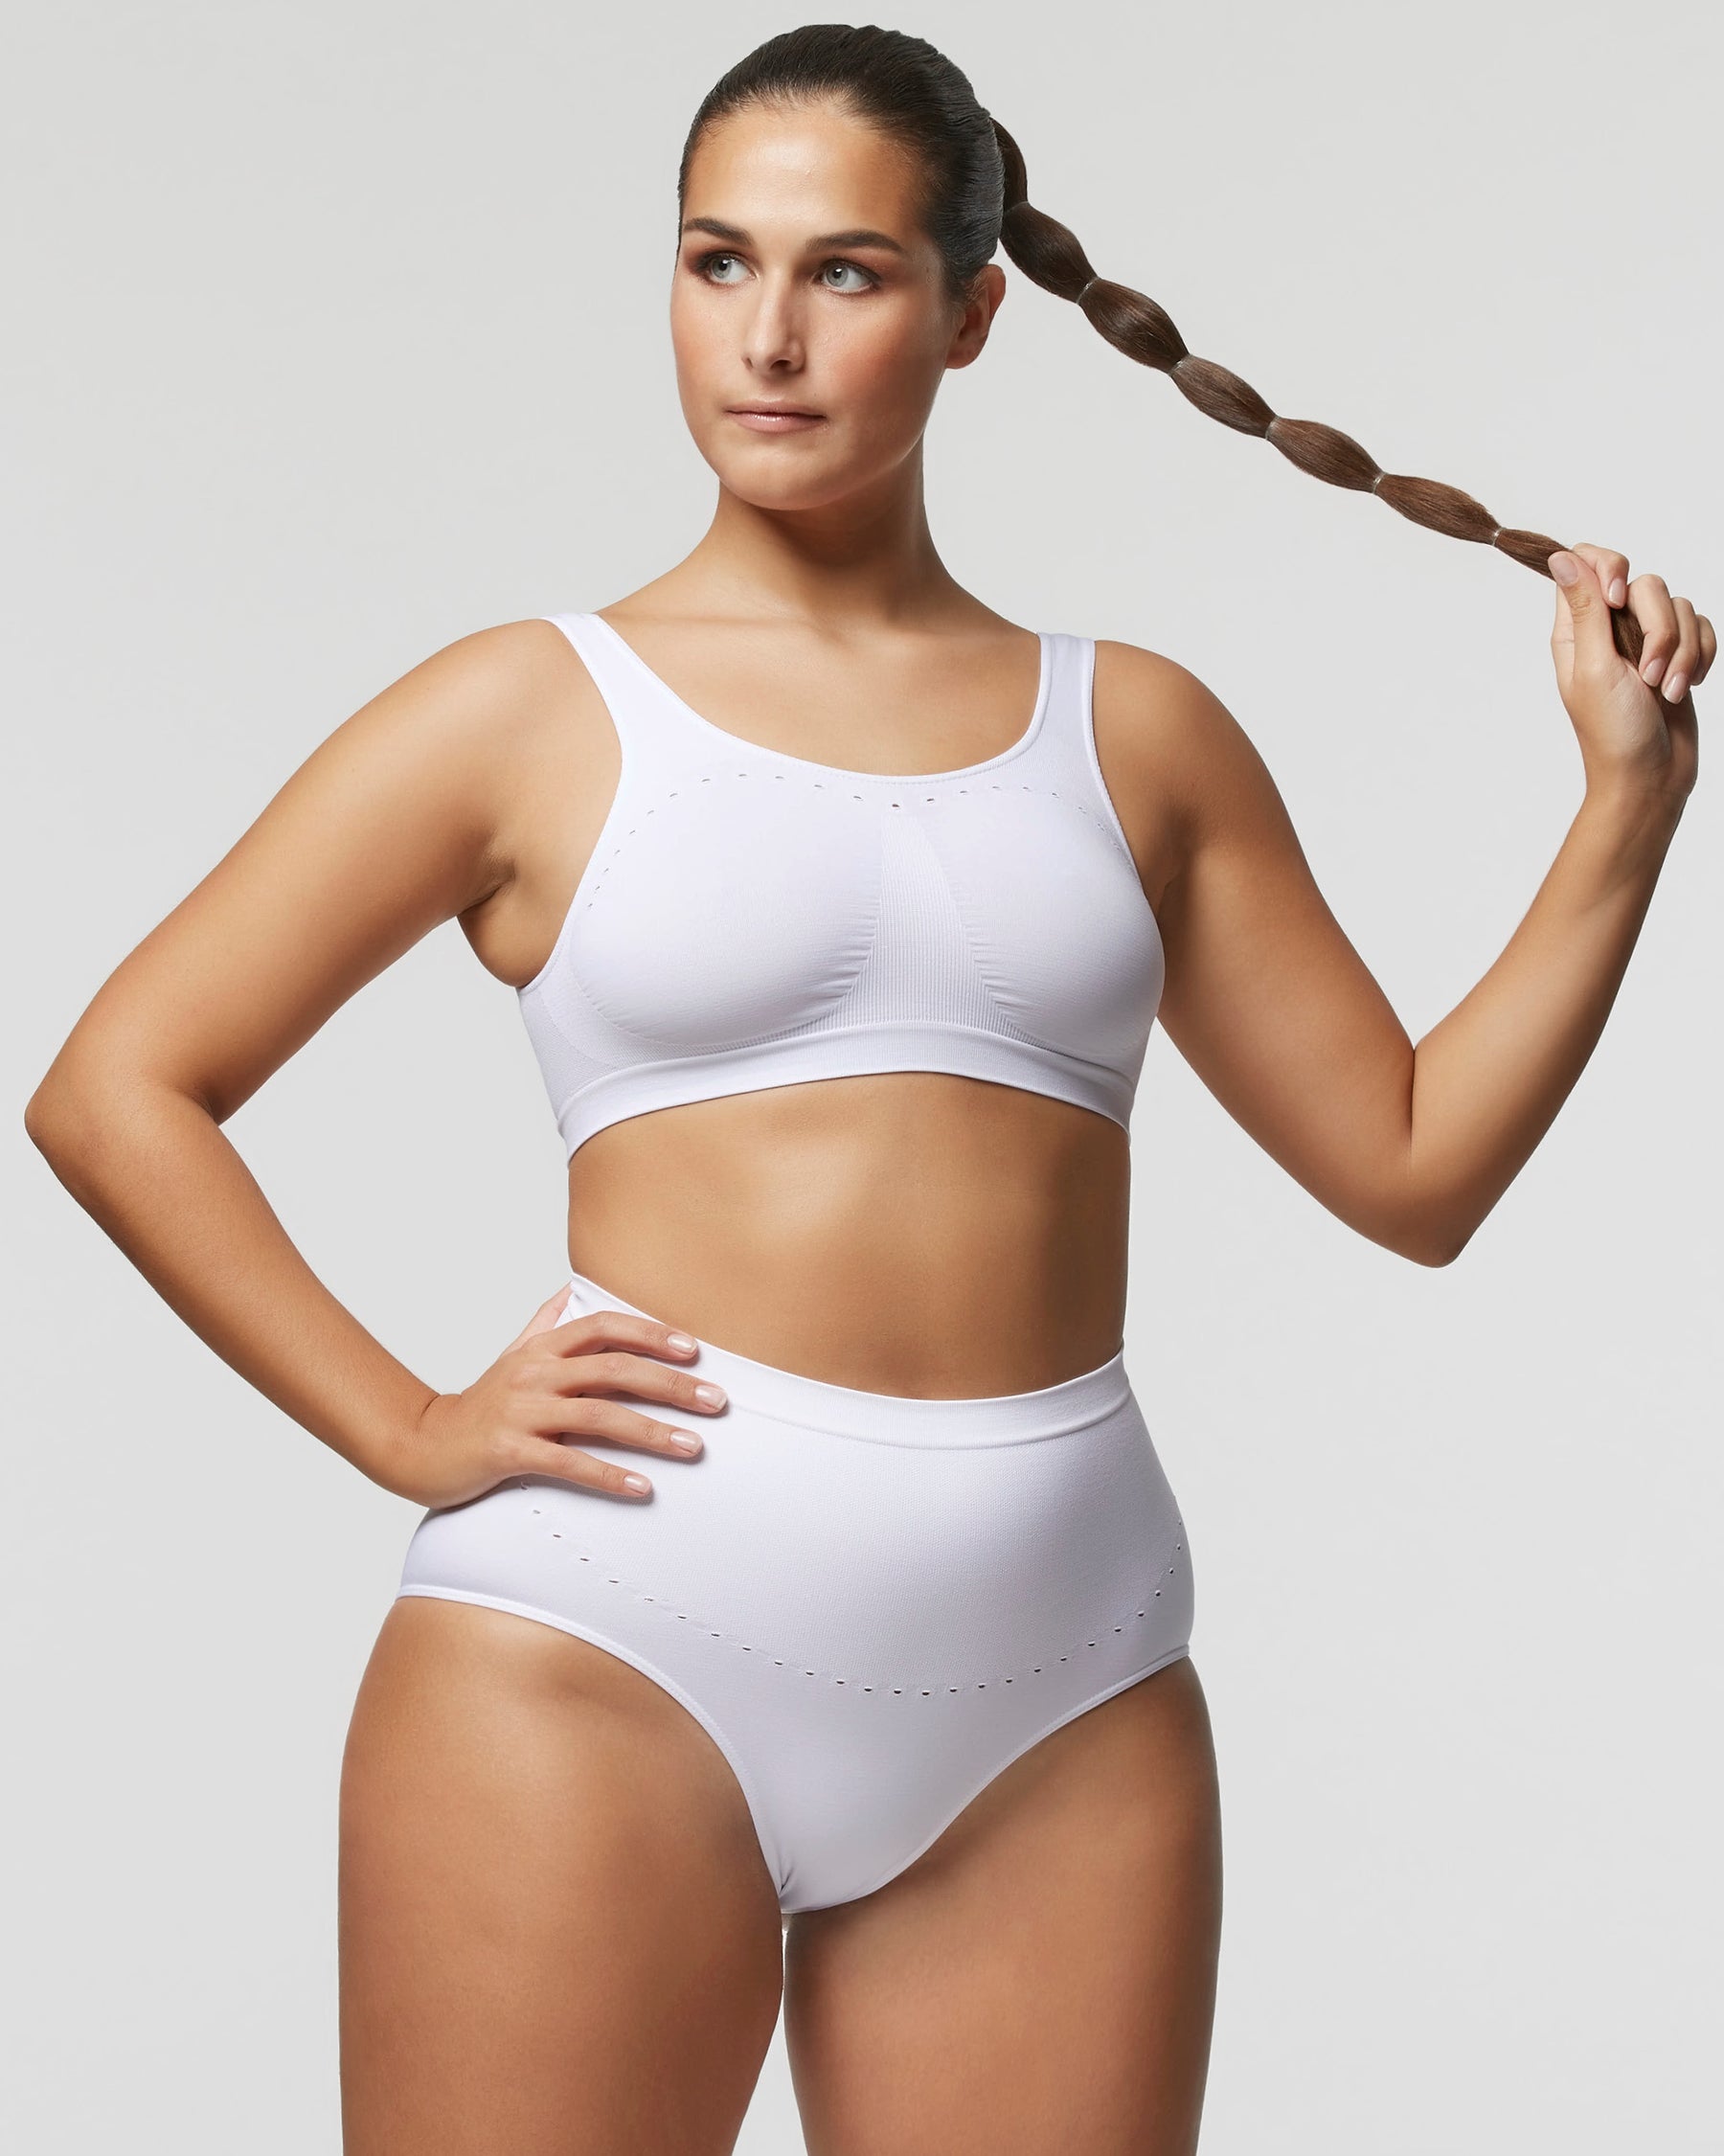 Seamless bikini briefs, Comfort Size, white, Women's Underwear